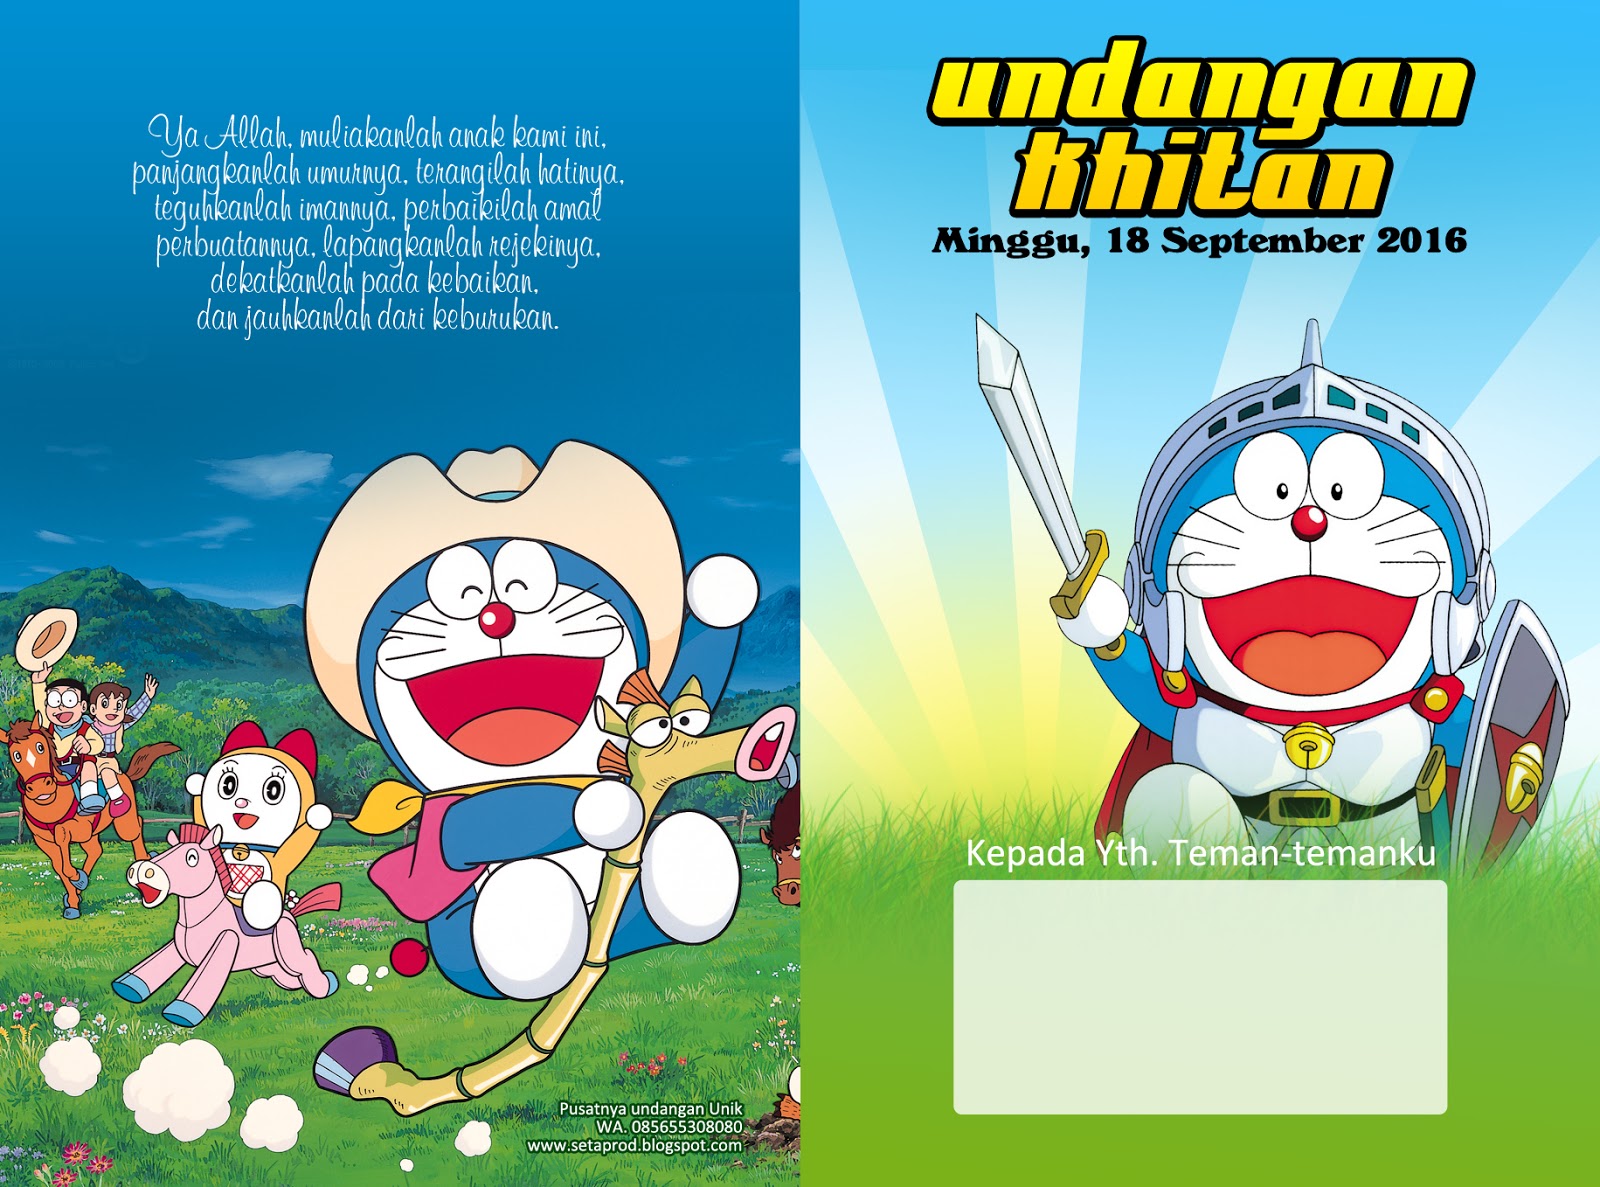 Undangan Model Doraemon Termurah Jawa Timur Nirwana Digital Print